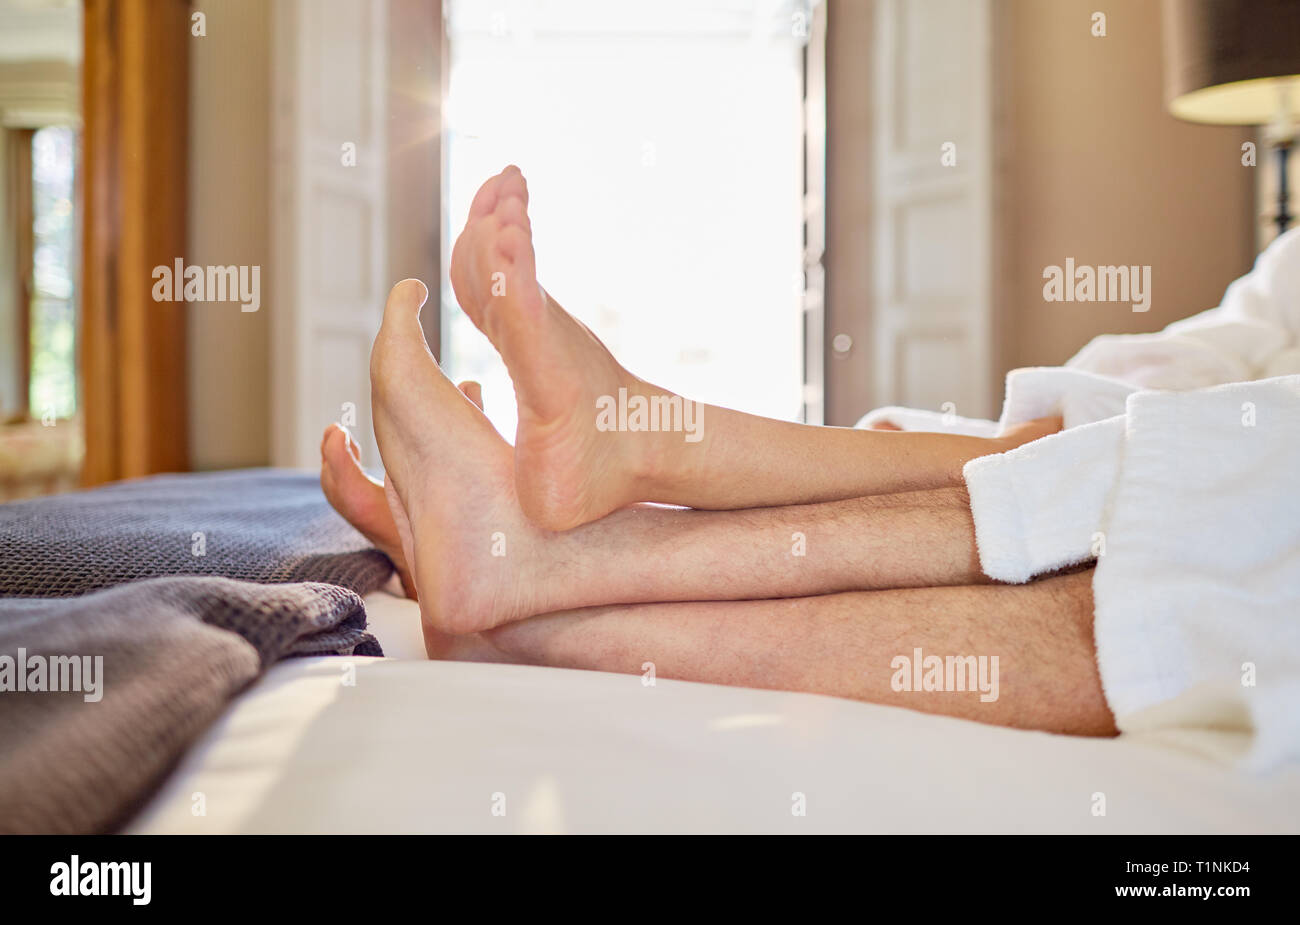 A piedi nudi giovane relax su hotel bed Foto Stock